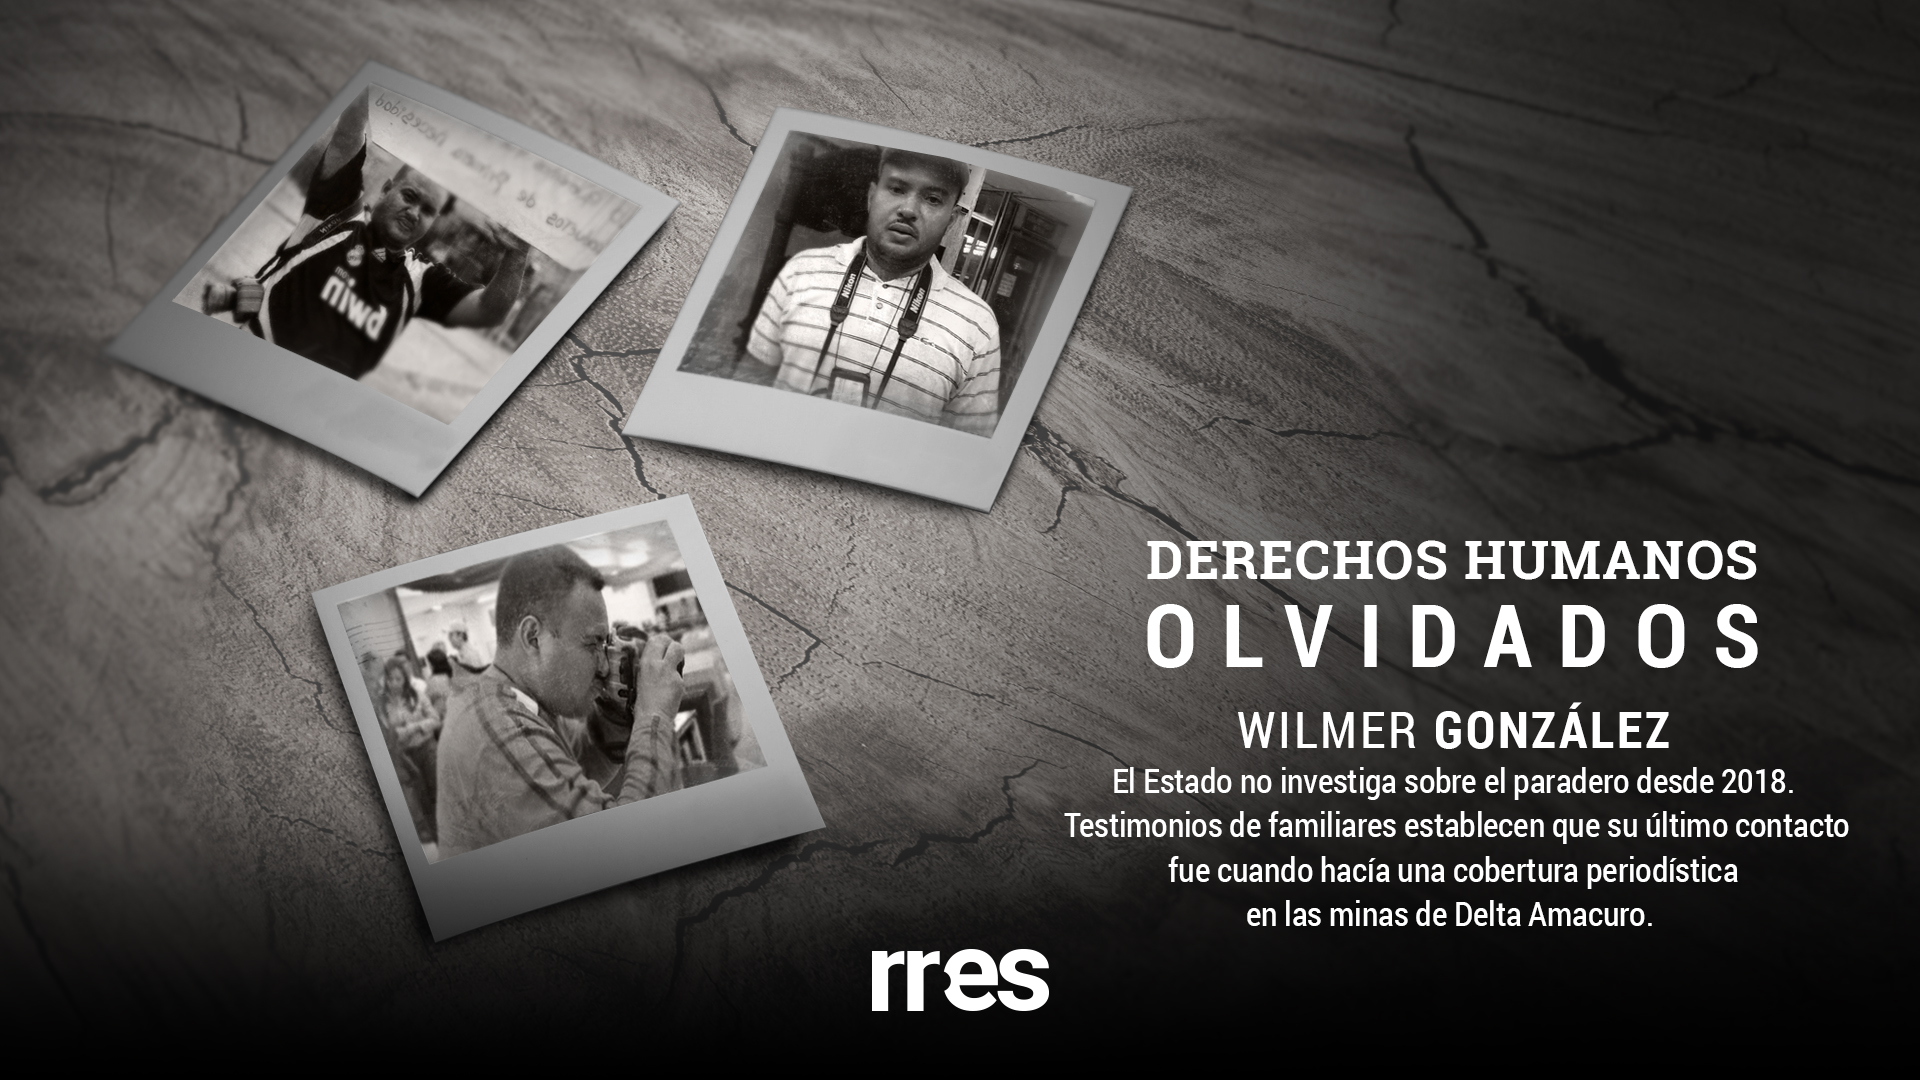 DDHH Olvidados | Wilmer González: un retrato de cinco años sobre la desaparición forzada